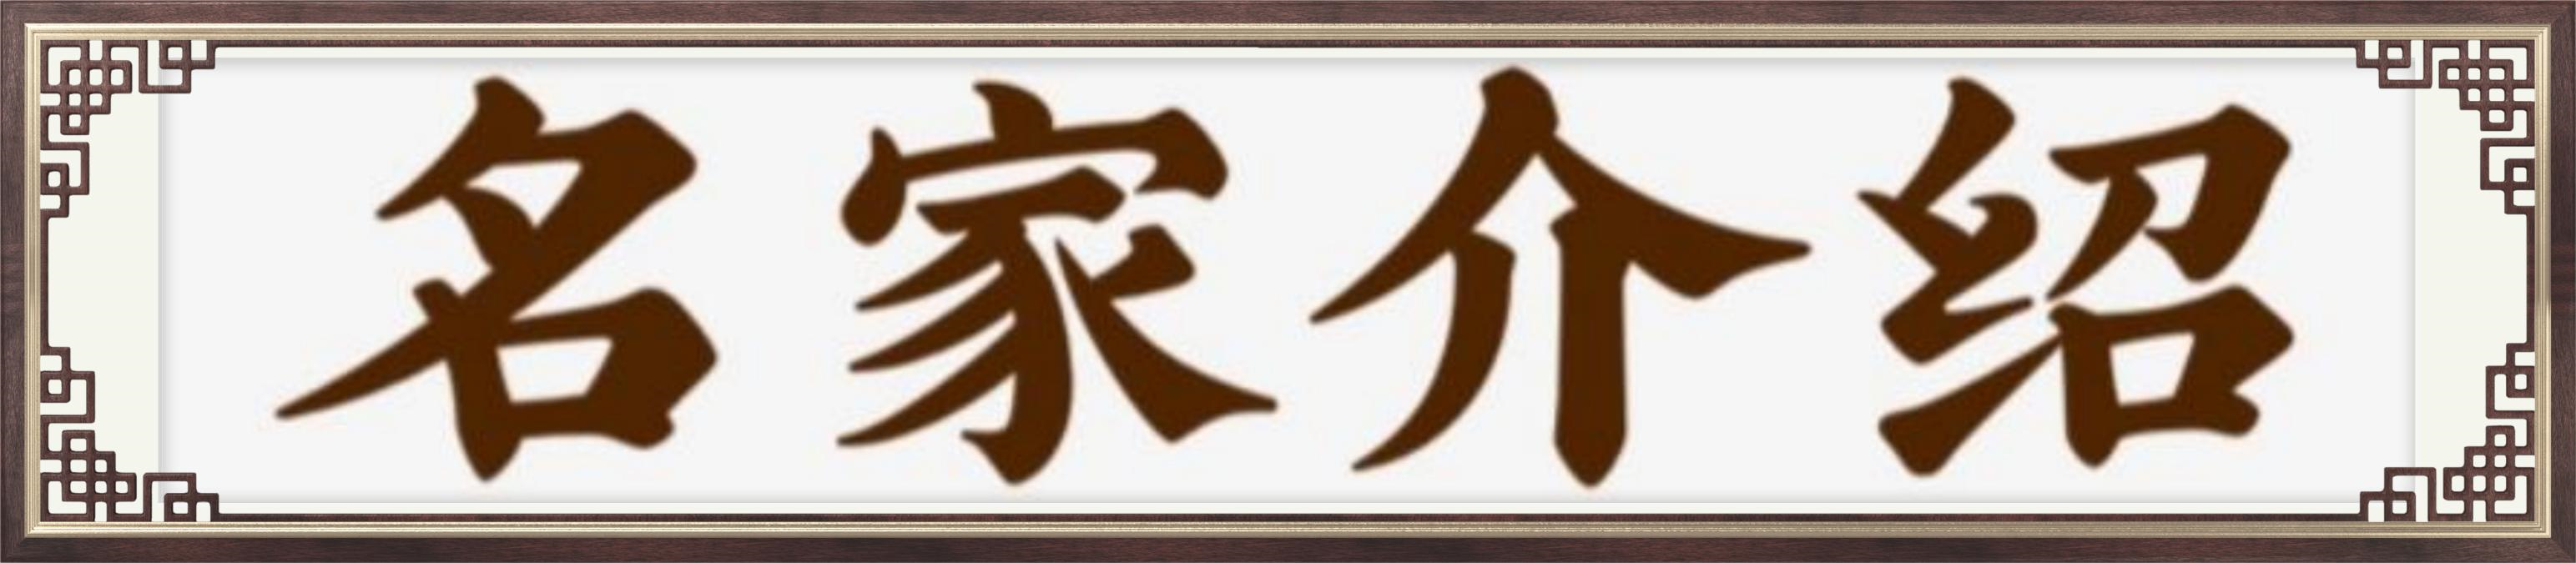 《中国艺术传承形象大使司徒惠霞——献礼建军95周年》